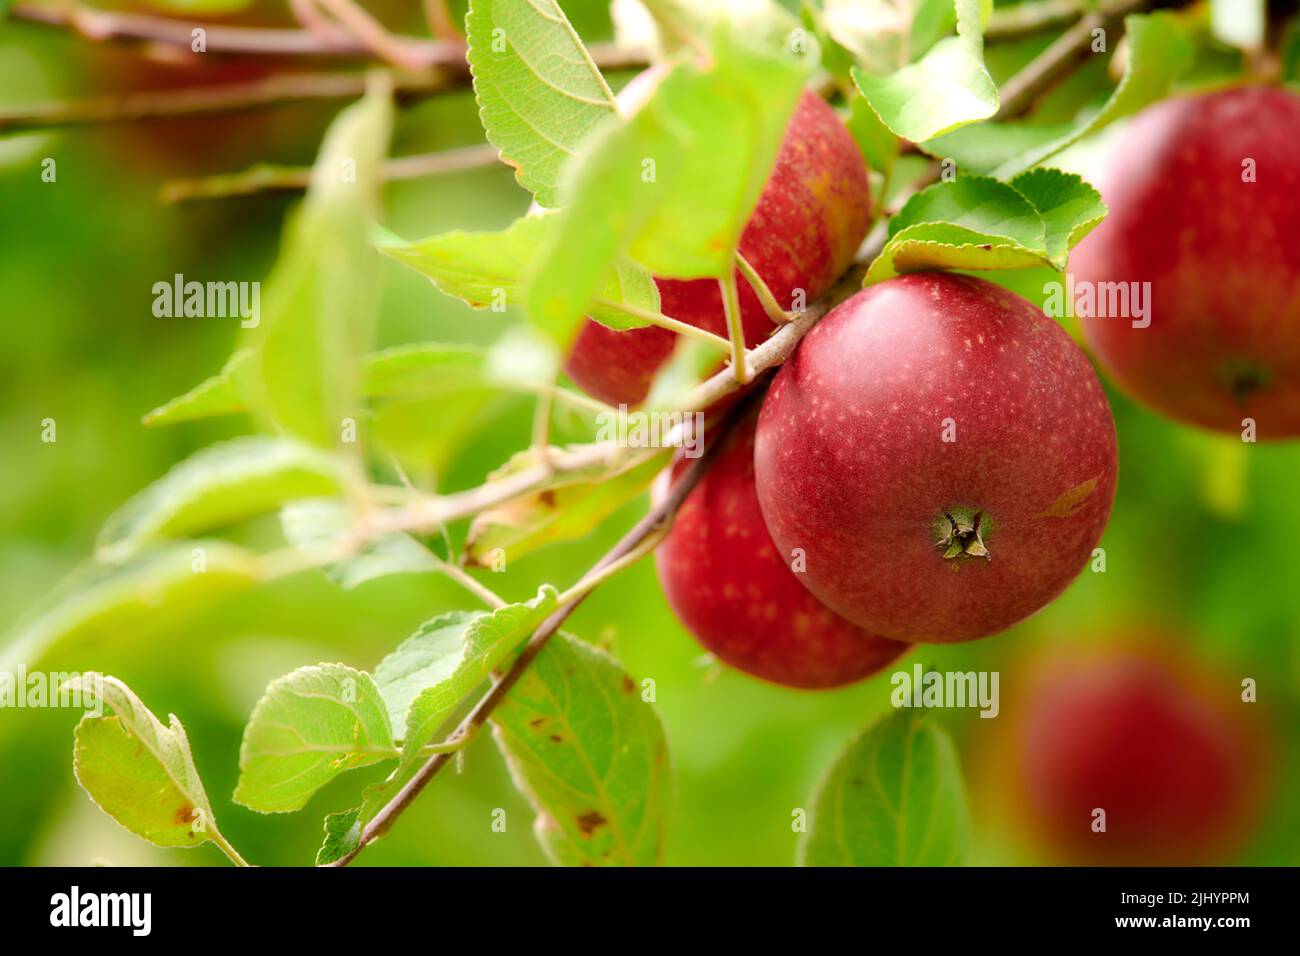 Nahaufnahme von reifen roten Äpfeln, die als frischer und gesunder Snack oder Diätfrucht für Fitness, Wellness oder Körperpflege wachsen. Apfelbaum auf nachhaltiger Obstplantage Stockfoto